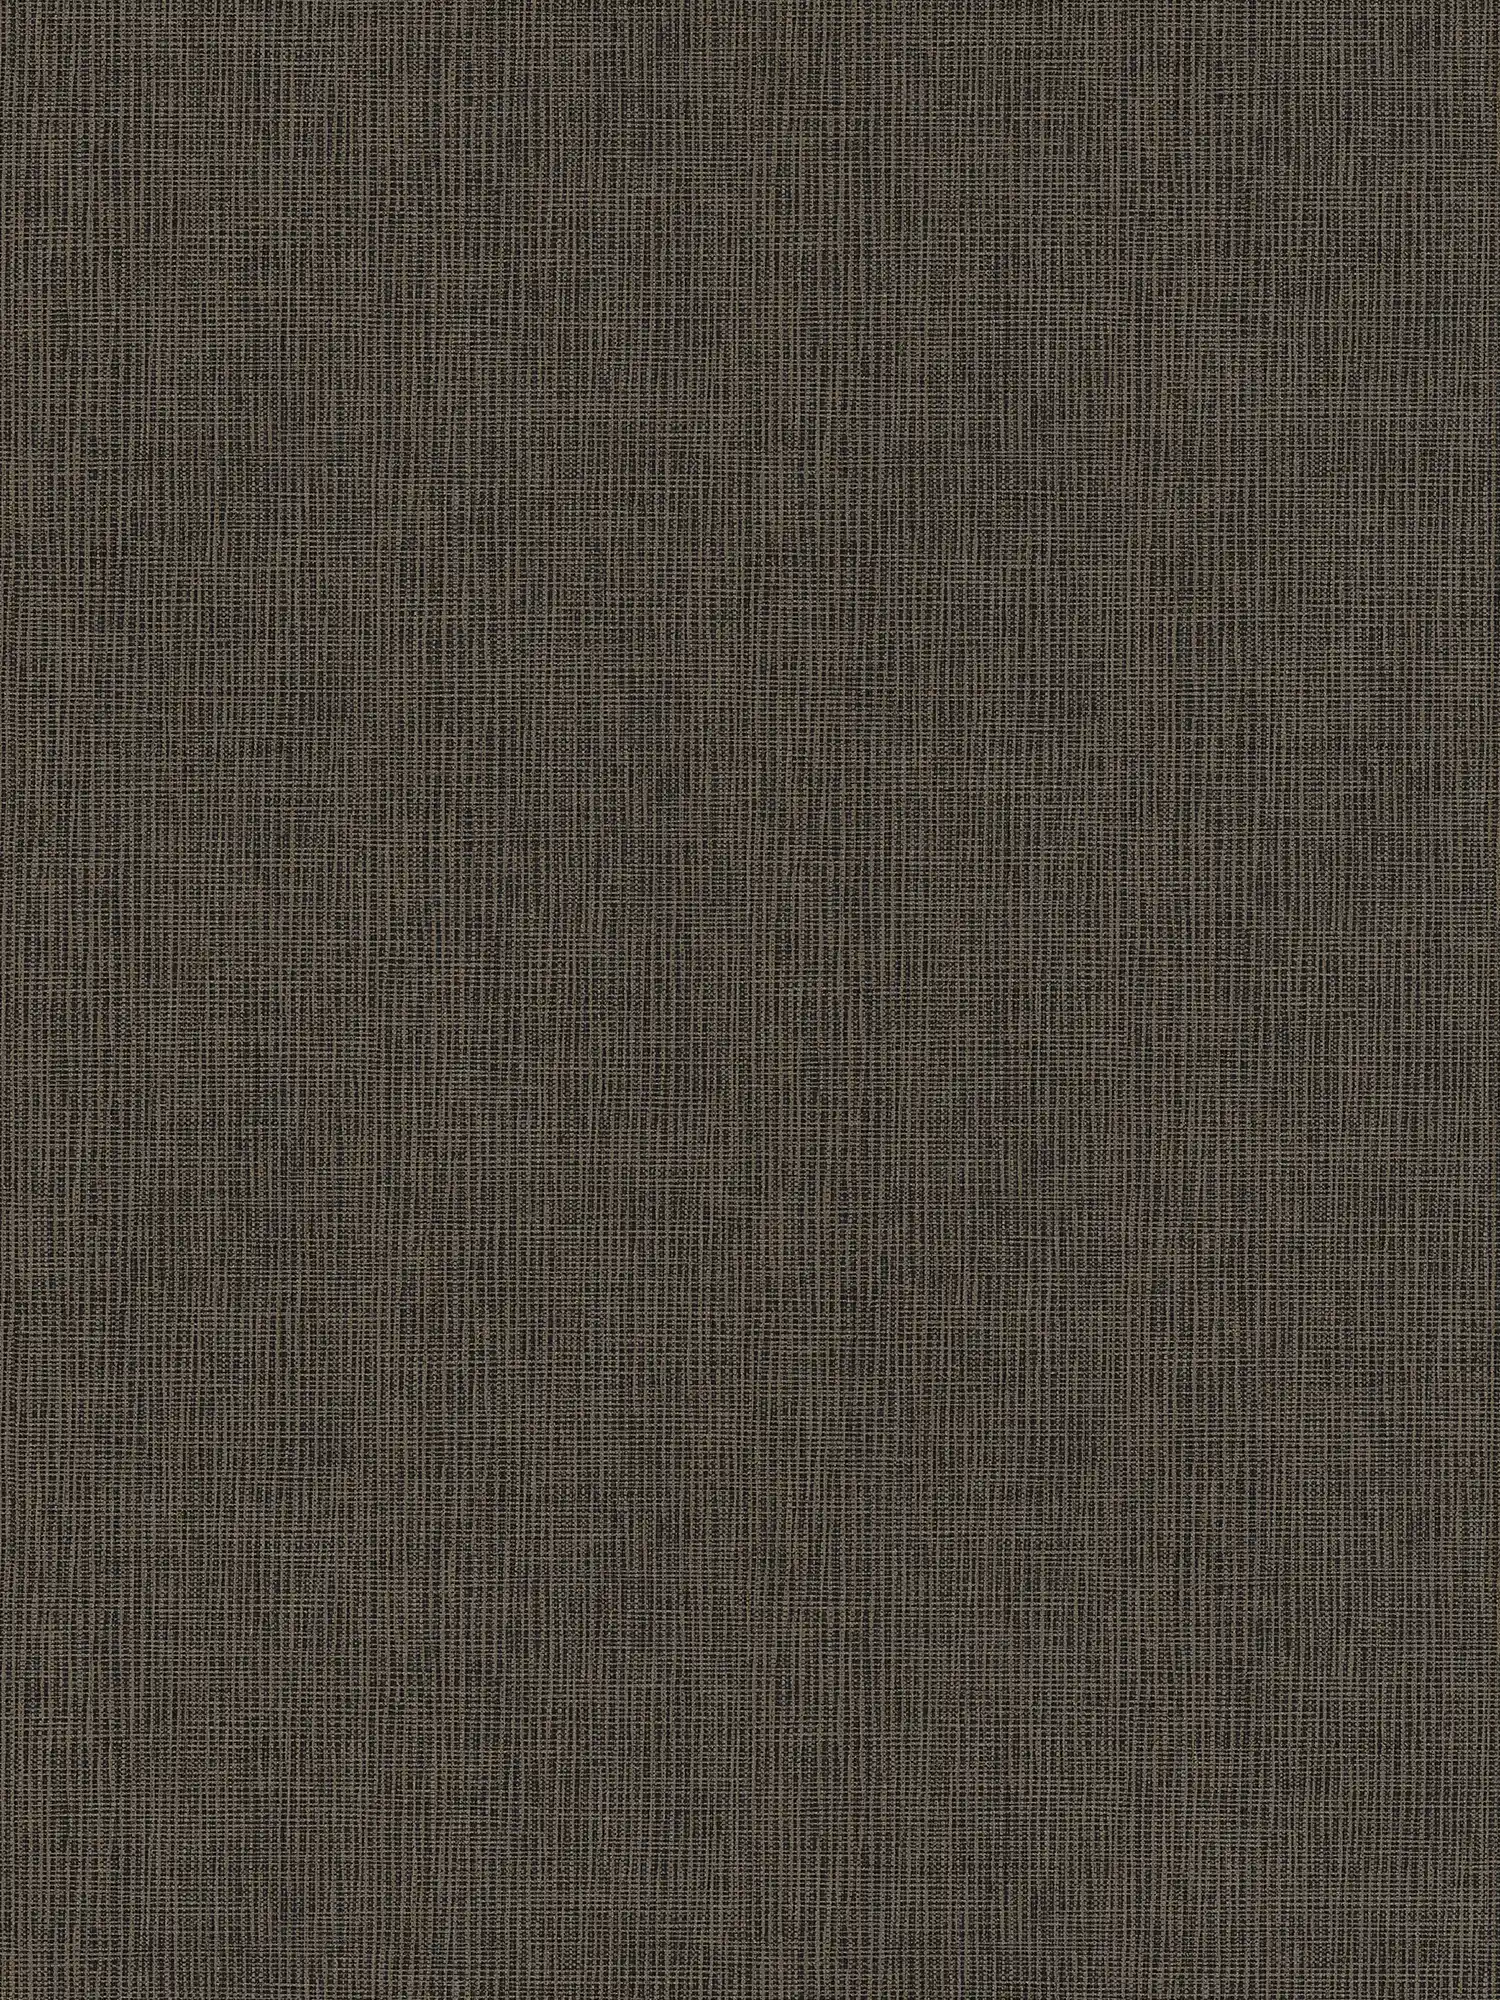 Braune Vliestapete mit grauen & goldenen Details – Blau, Grau, Silber
